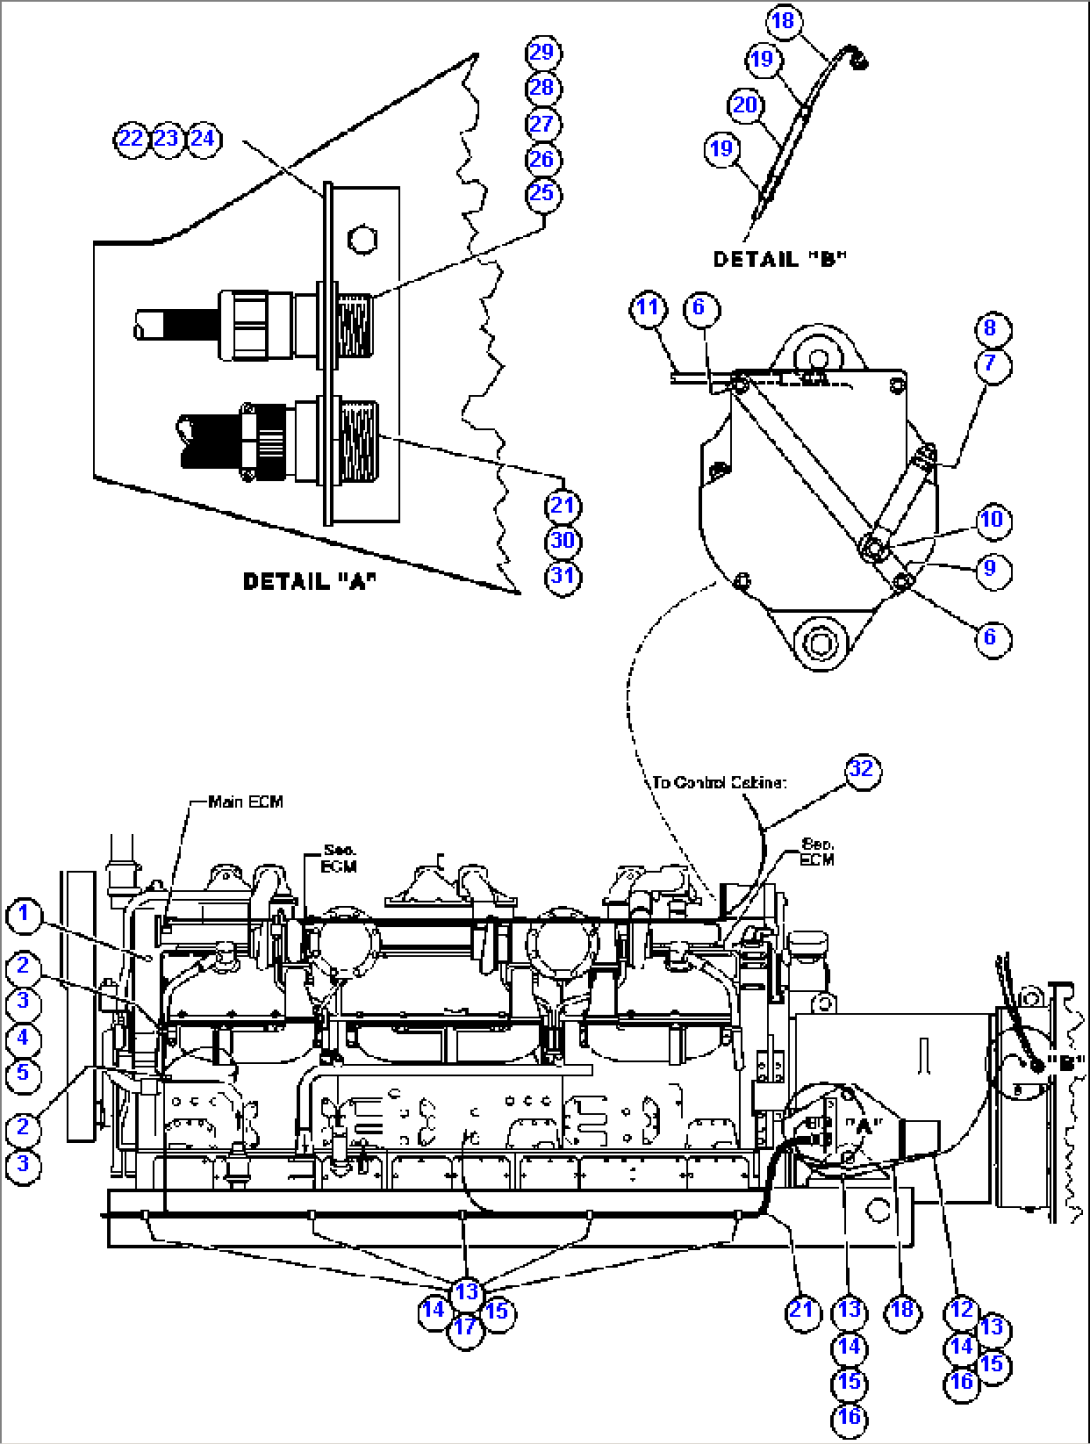 ENGINE WIRING (NON-HMS)